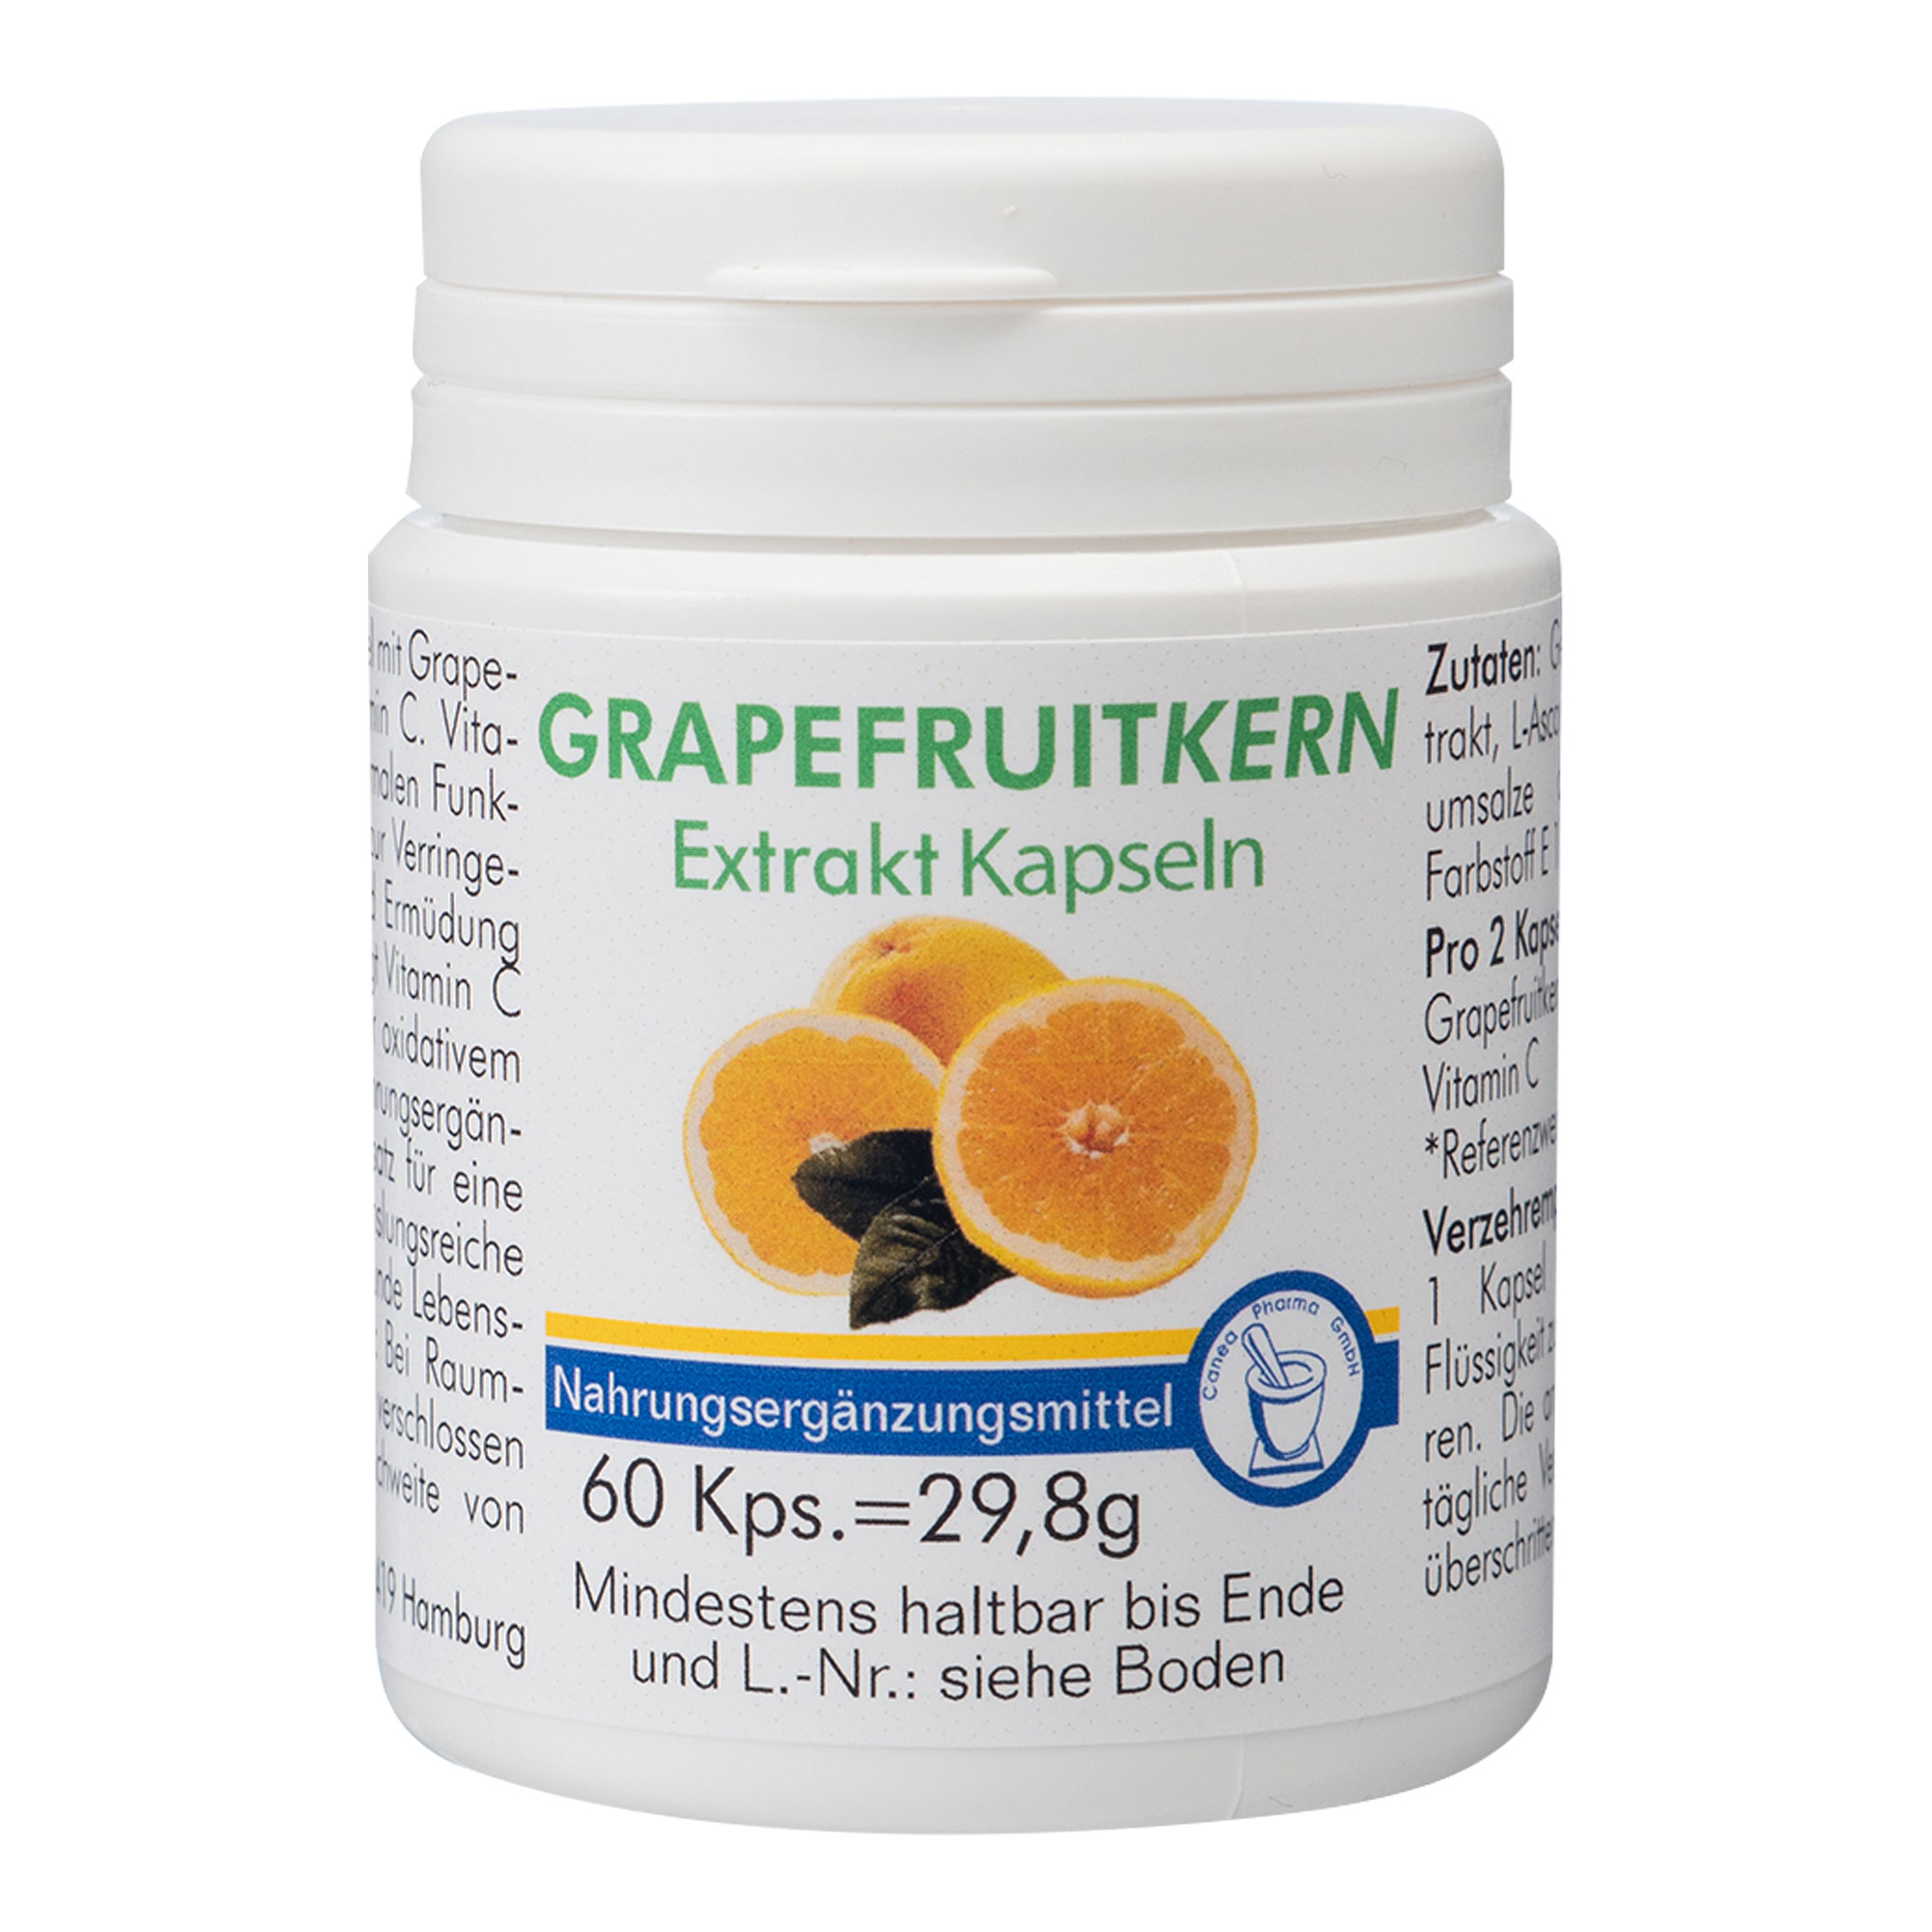 Nahrungsergänzungsmittel mit Grapefruitkernextrakt, Grapefruitfruchtpulver und Vitamin C.